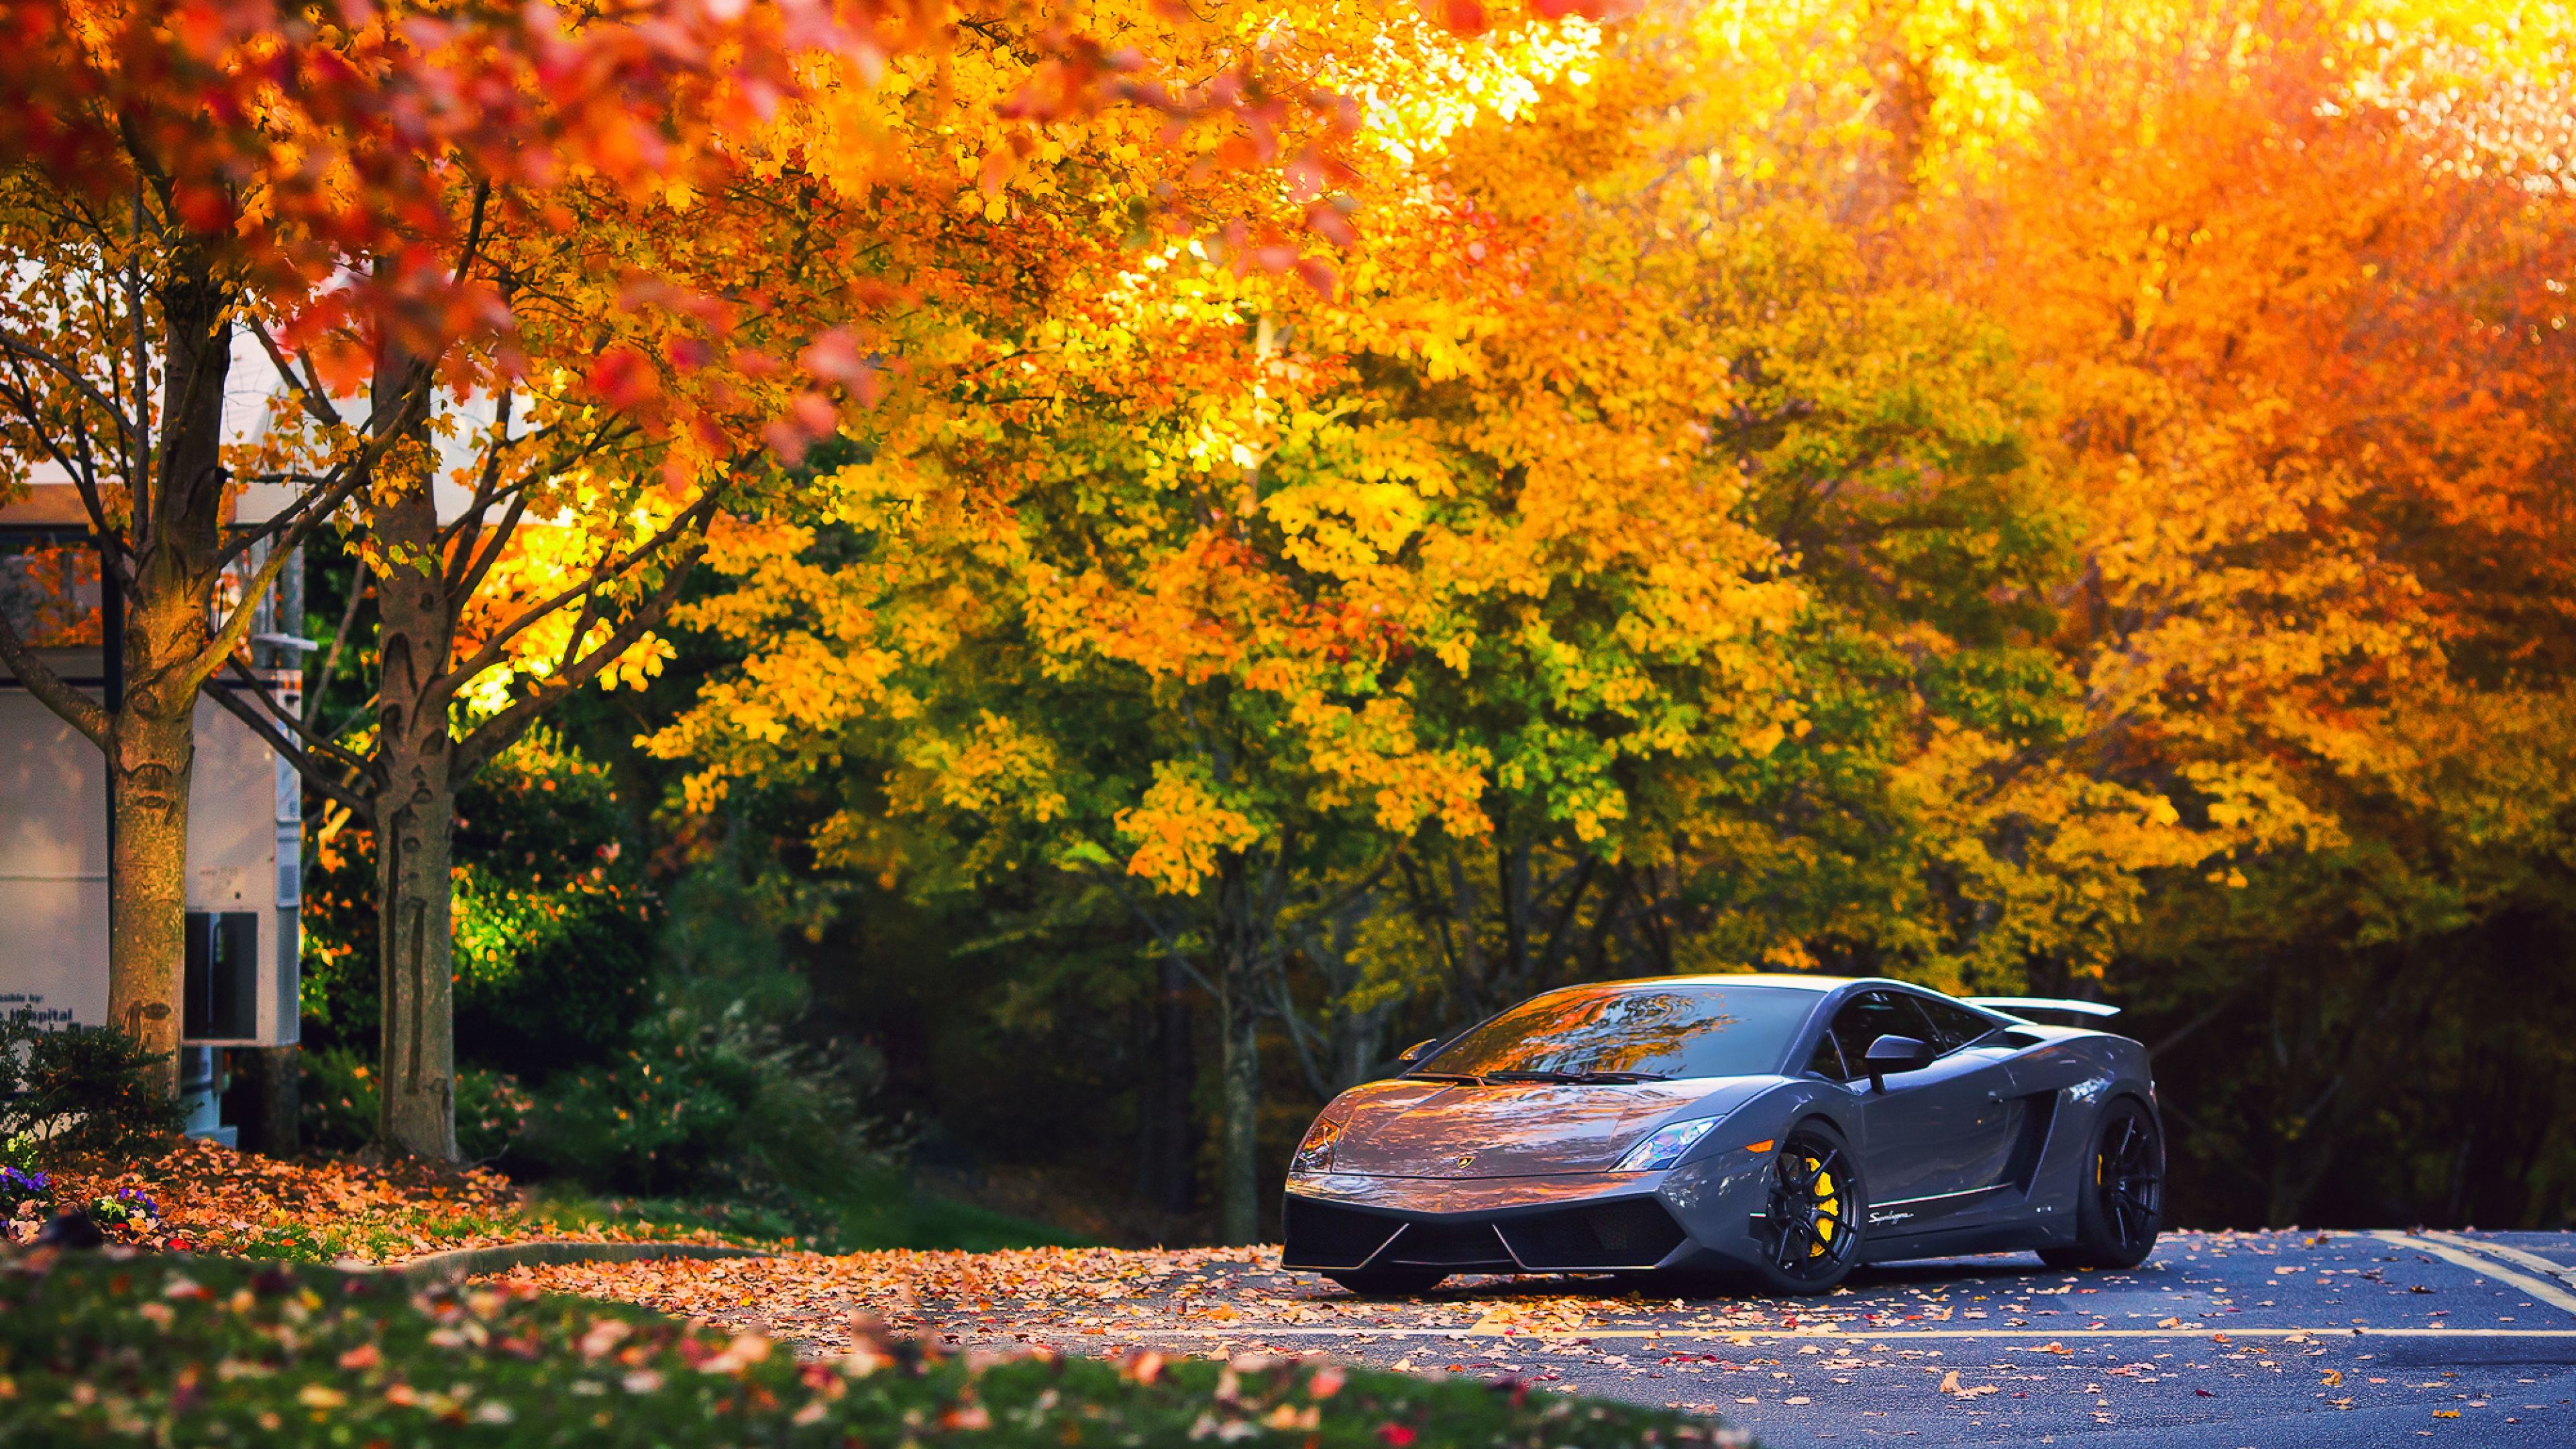 Lamborghini Autumn Gallardo, HD Cars, 4k Wallpaper, Image, Background, Photo and Picture